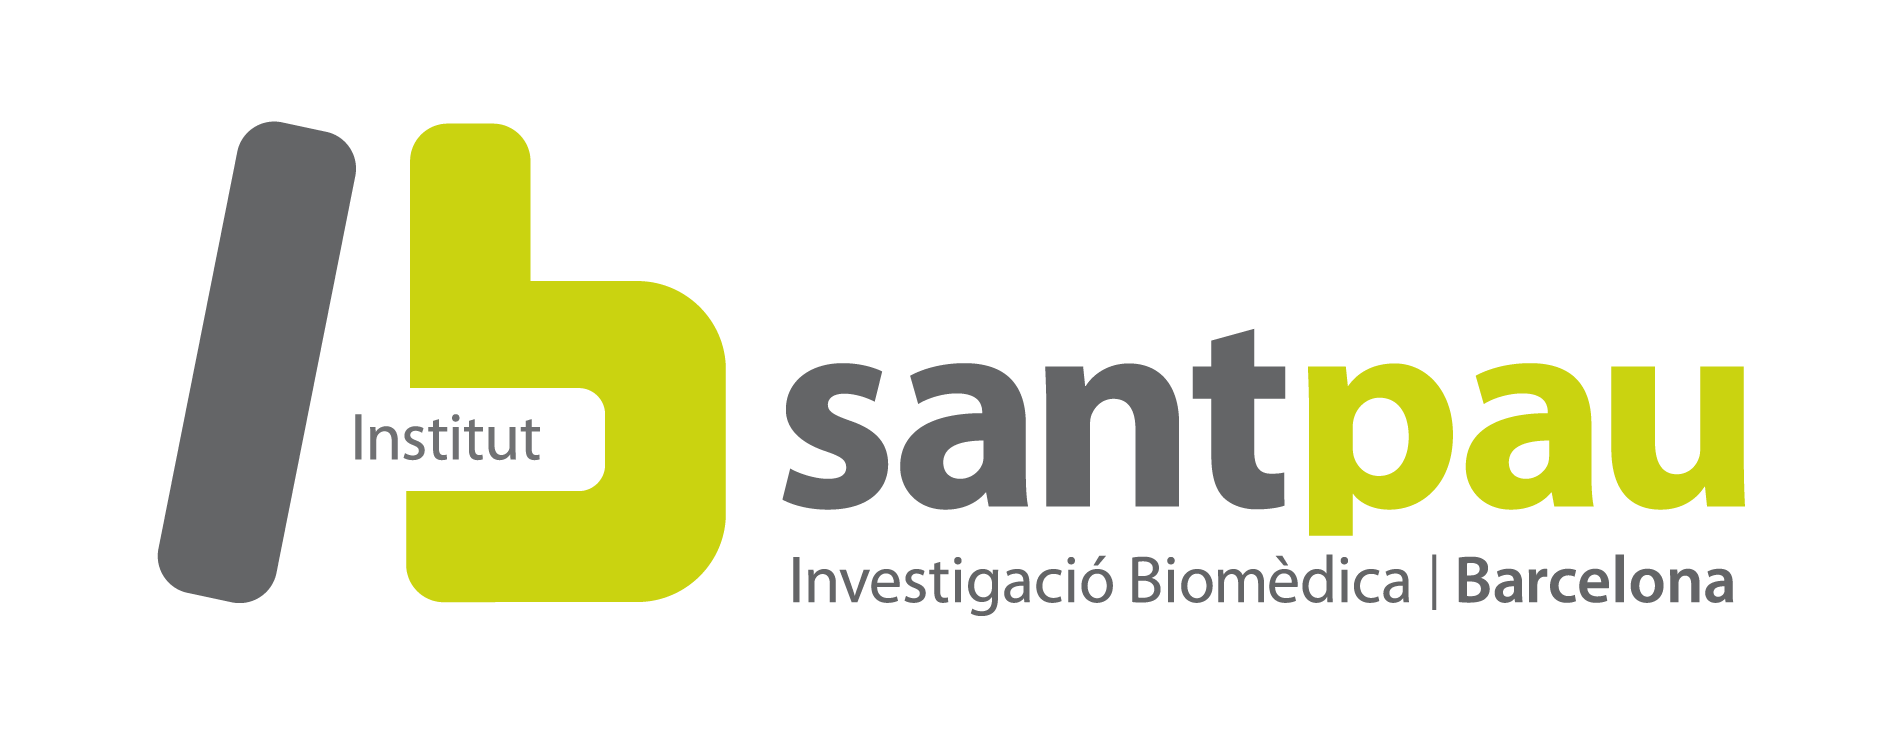 IIB-SANTPAU_Logotip_Catala_COLOR_PNG